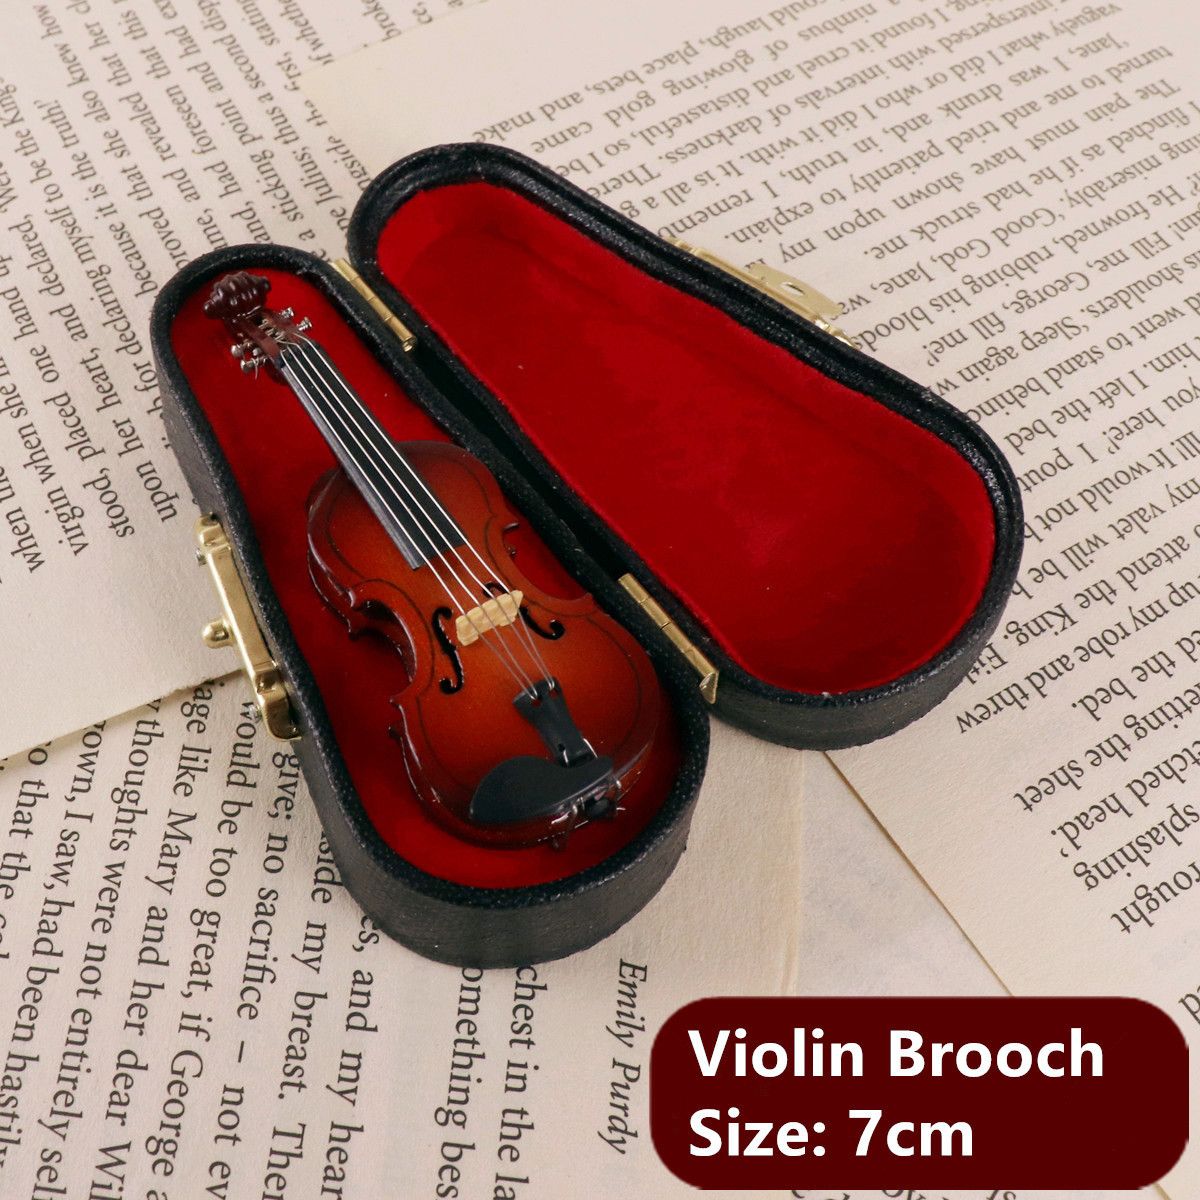 Violin brosch